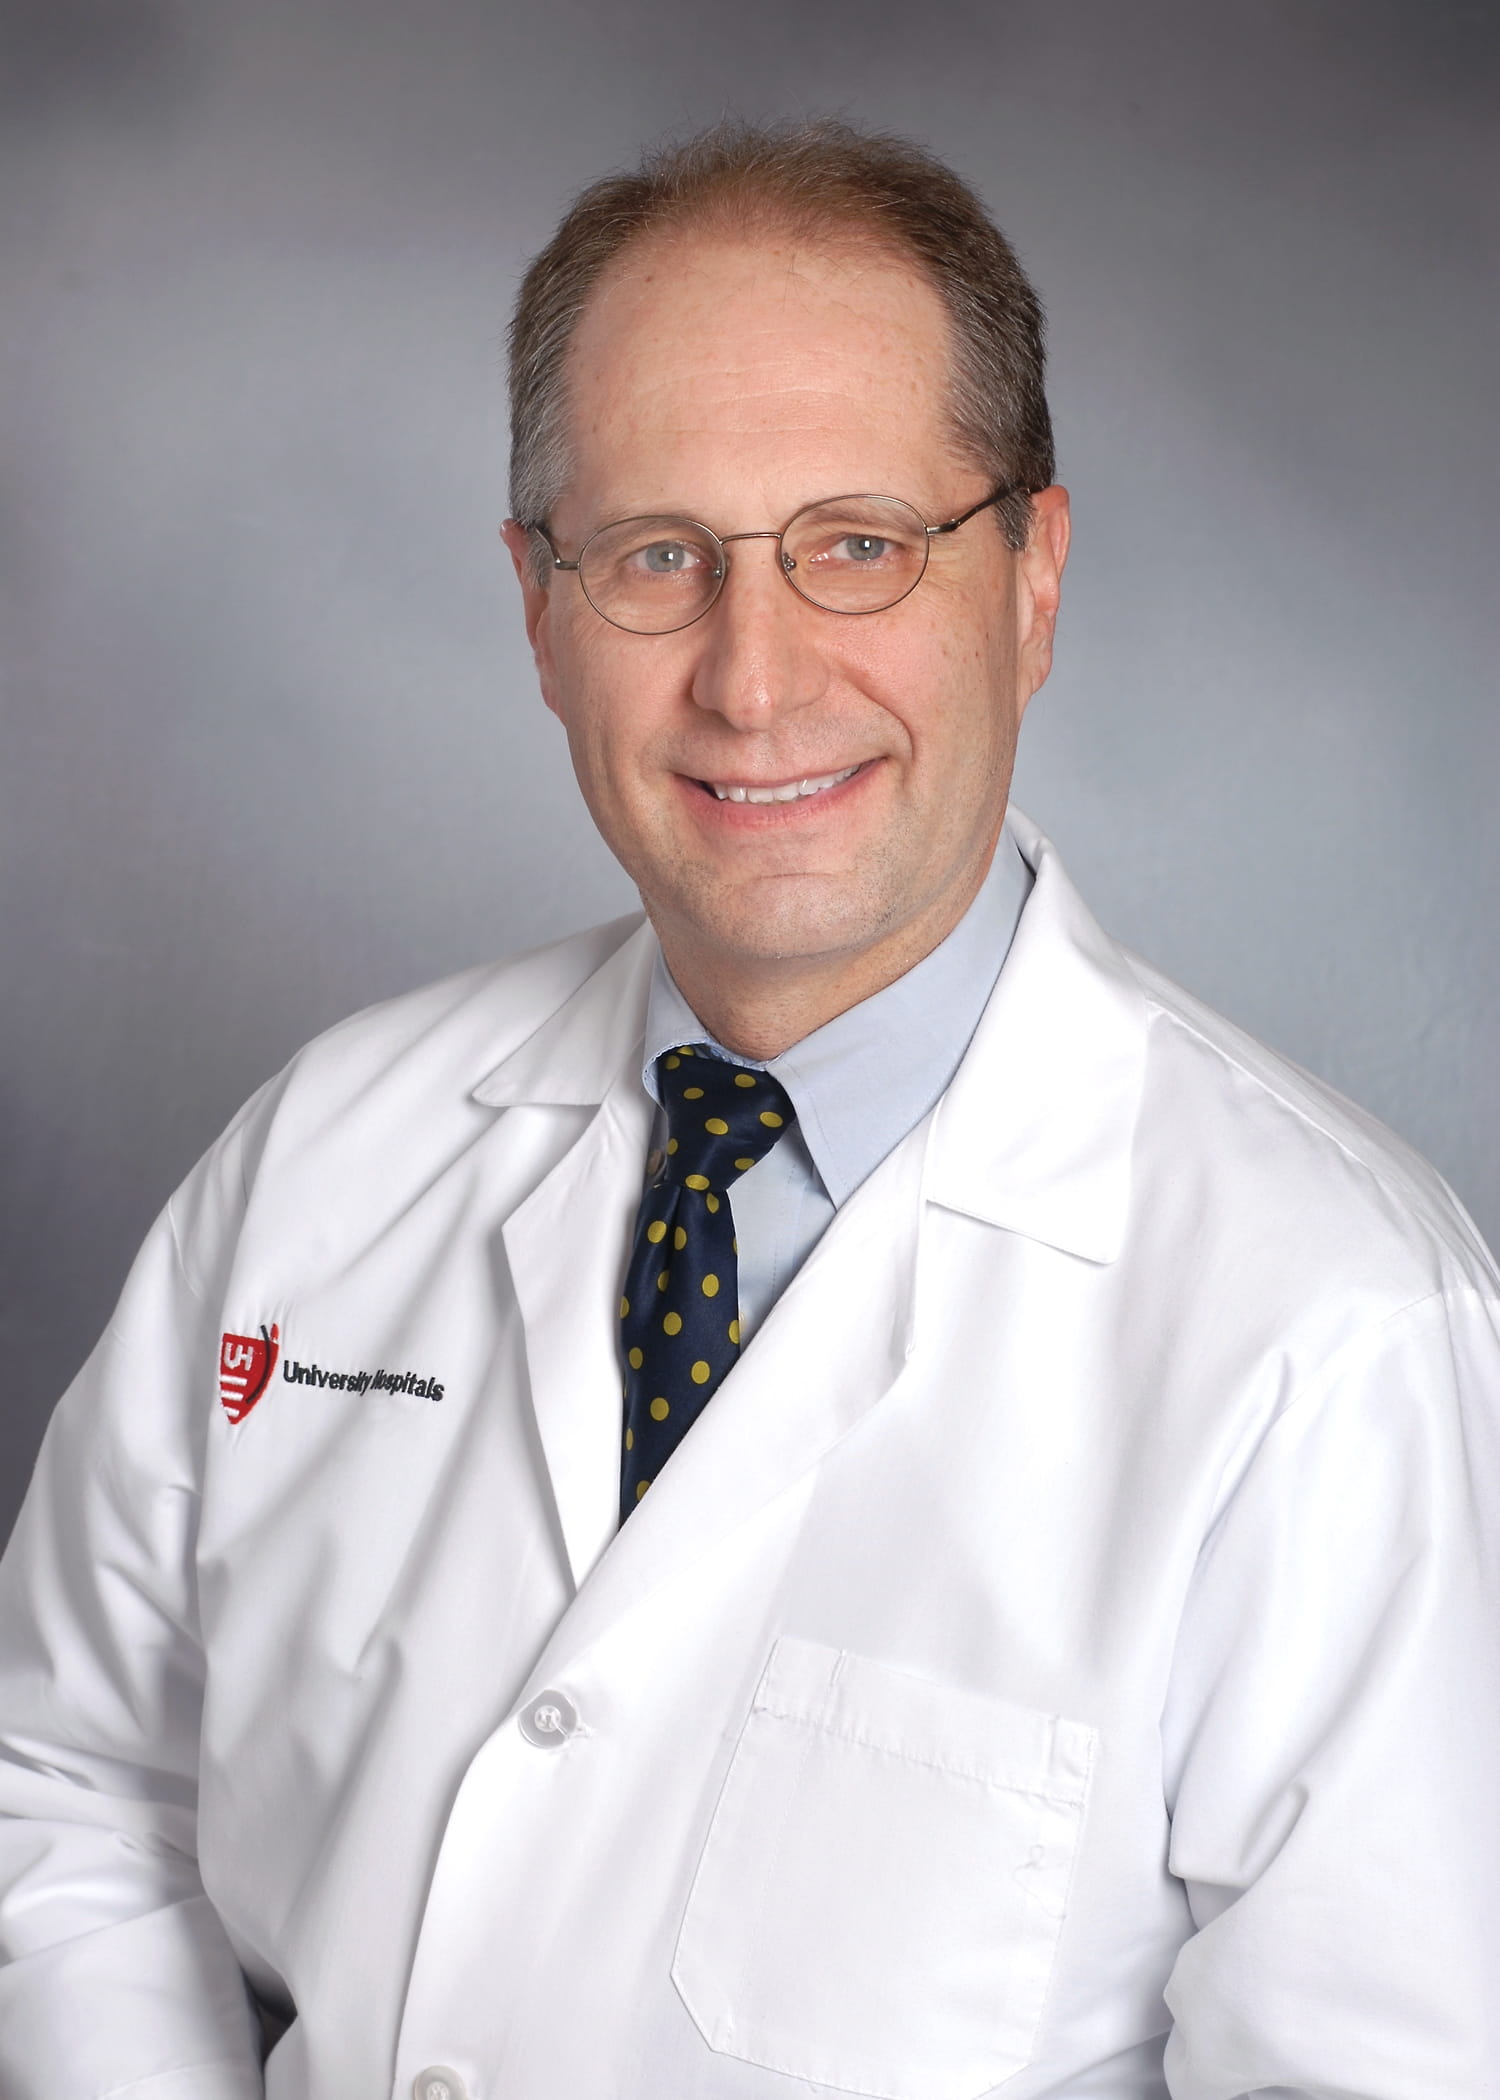 Robert J. Schilz, MD